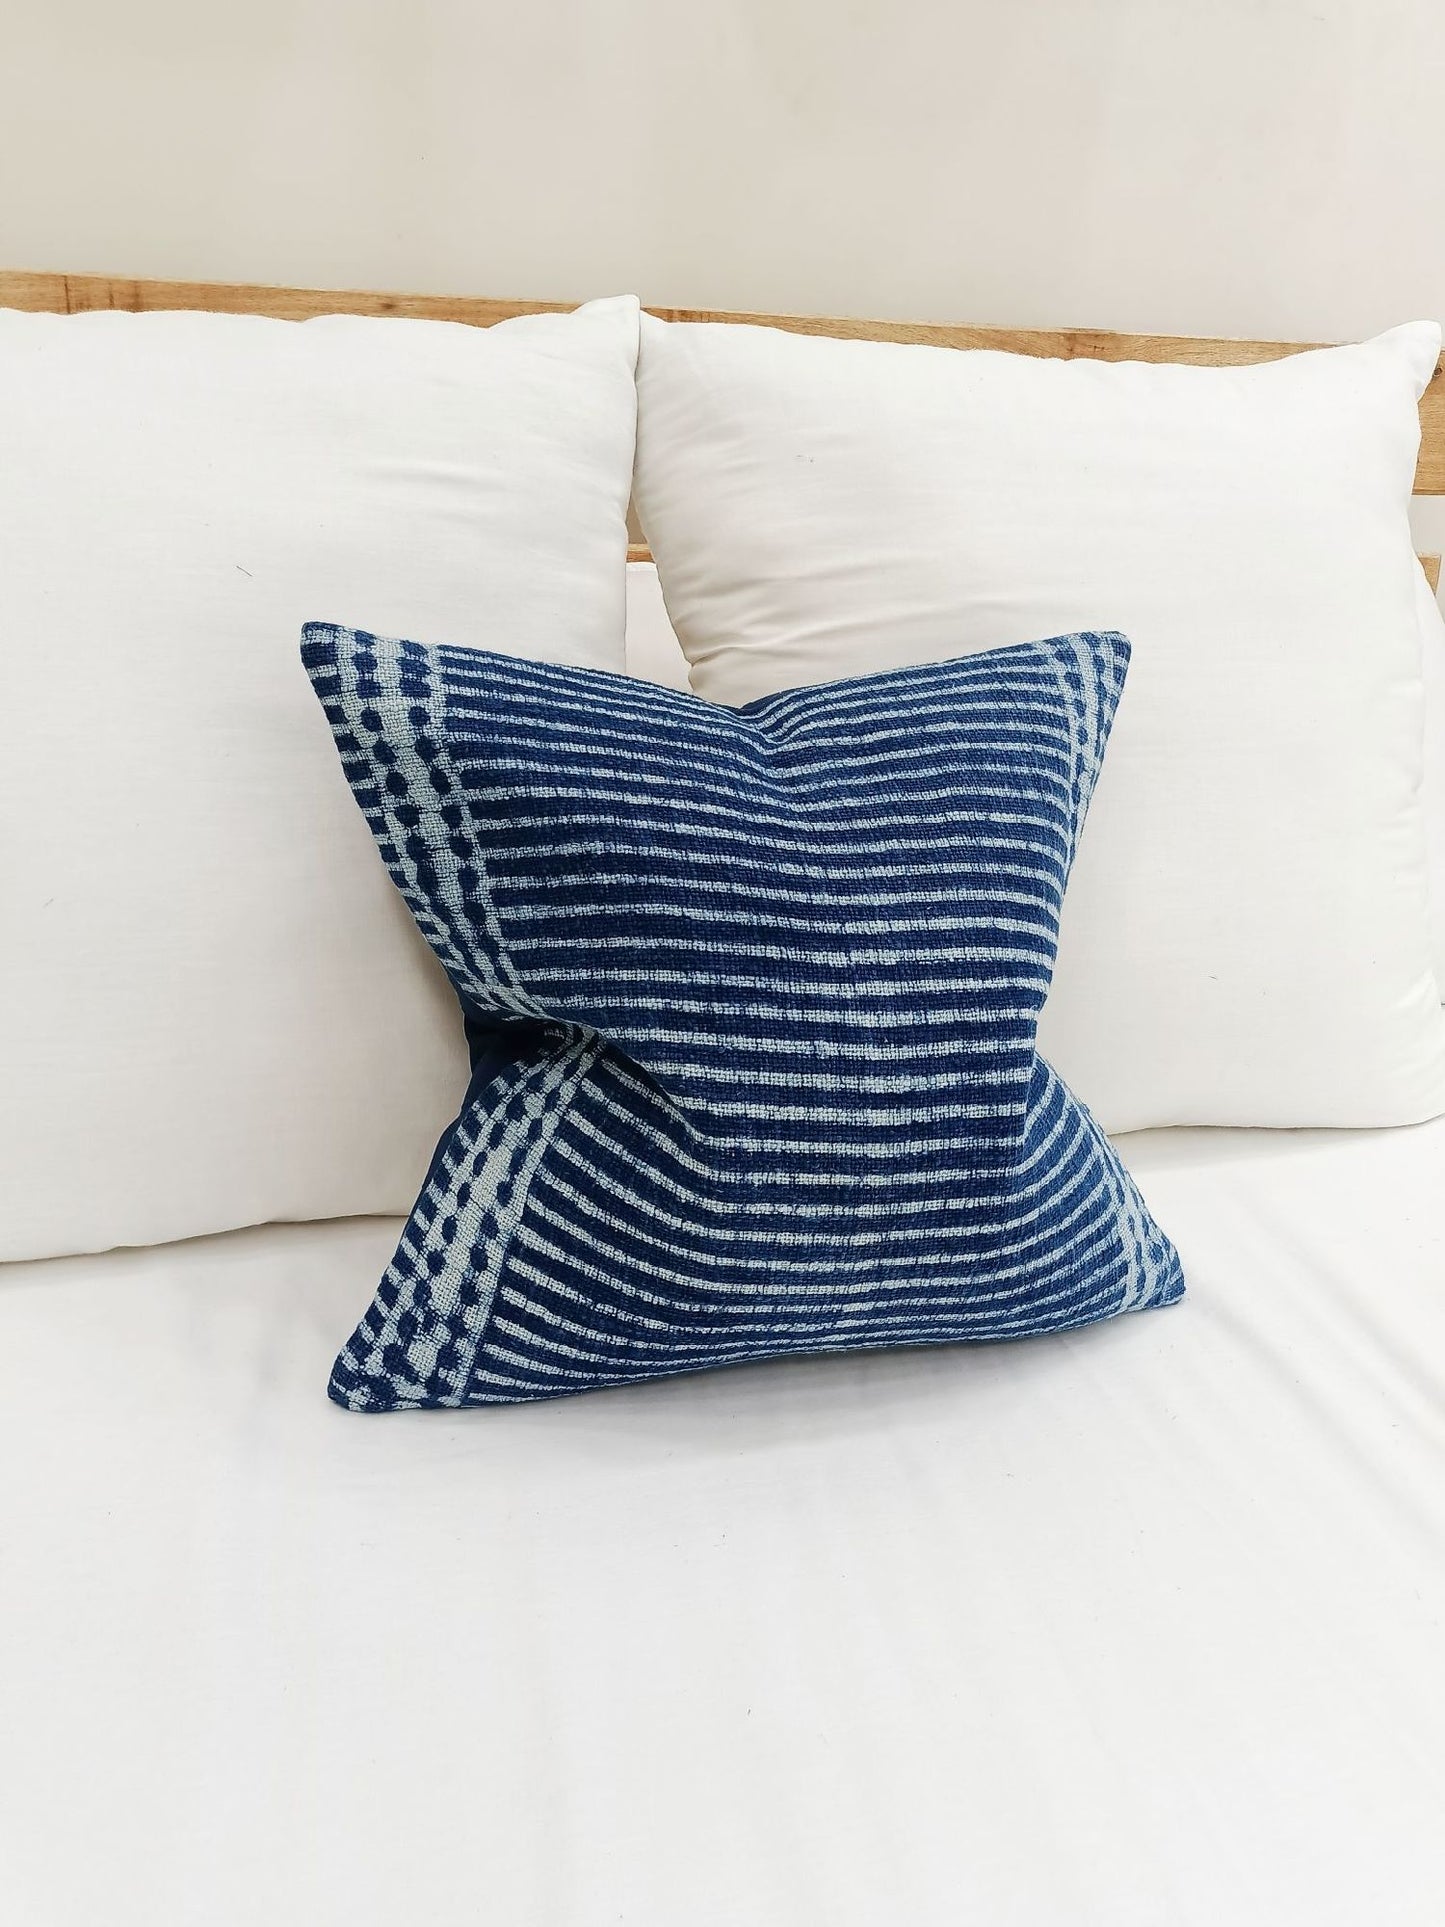 MTN Pillow Cover Indigo Blue Pillow Cover Pillow Cover for new year gift Boho Pillow Cover